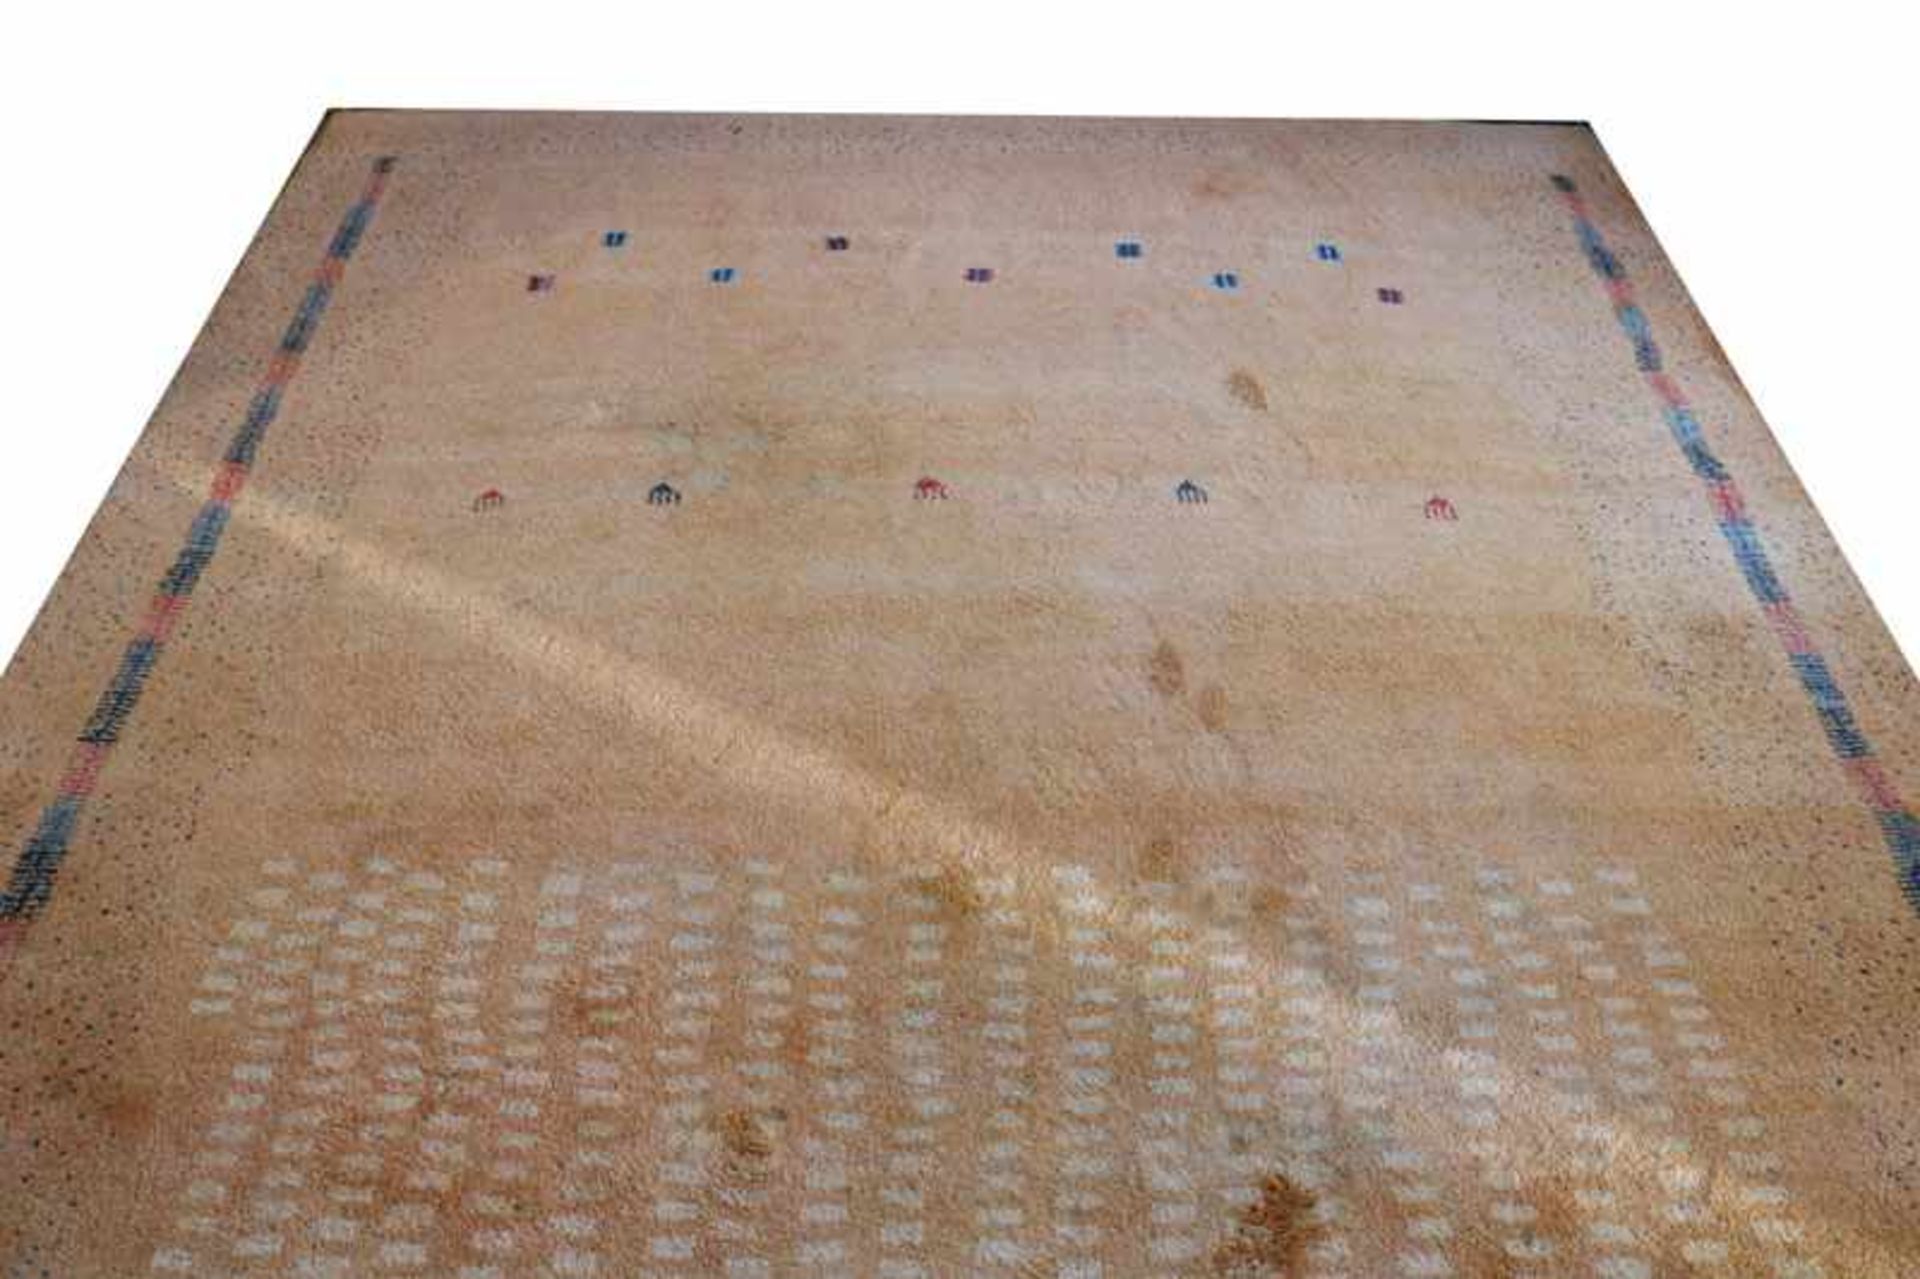 Teppich, Berber, orange/blau/rot, Gebrauchsspuren, teils fleckig, 328 cm x 240 cm, Versand per